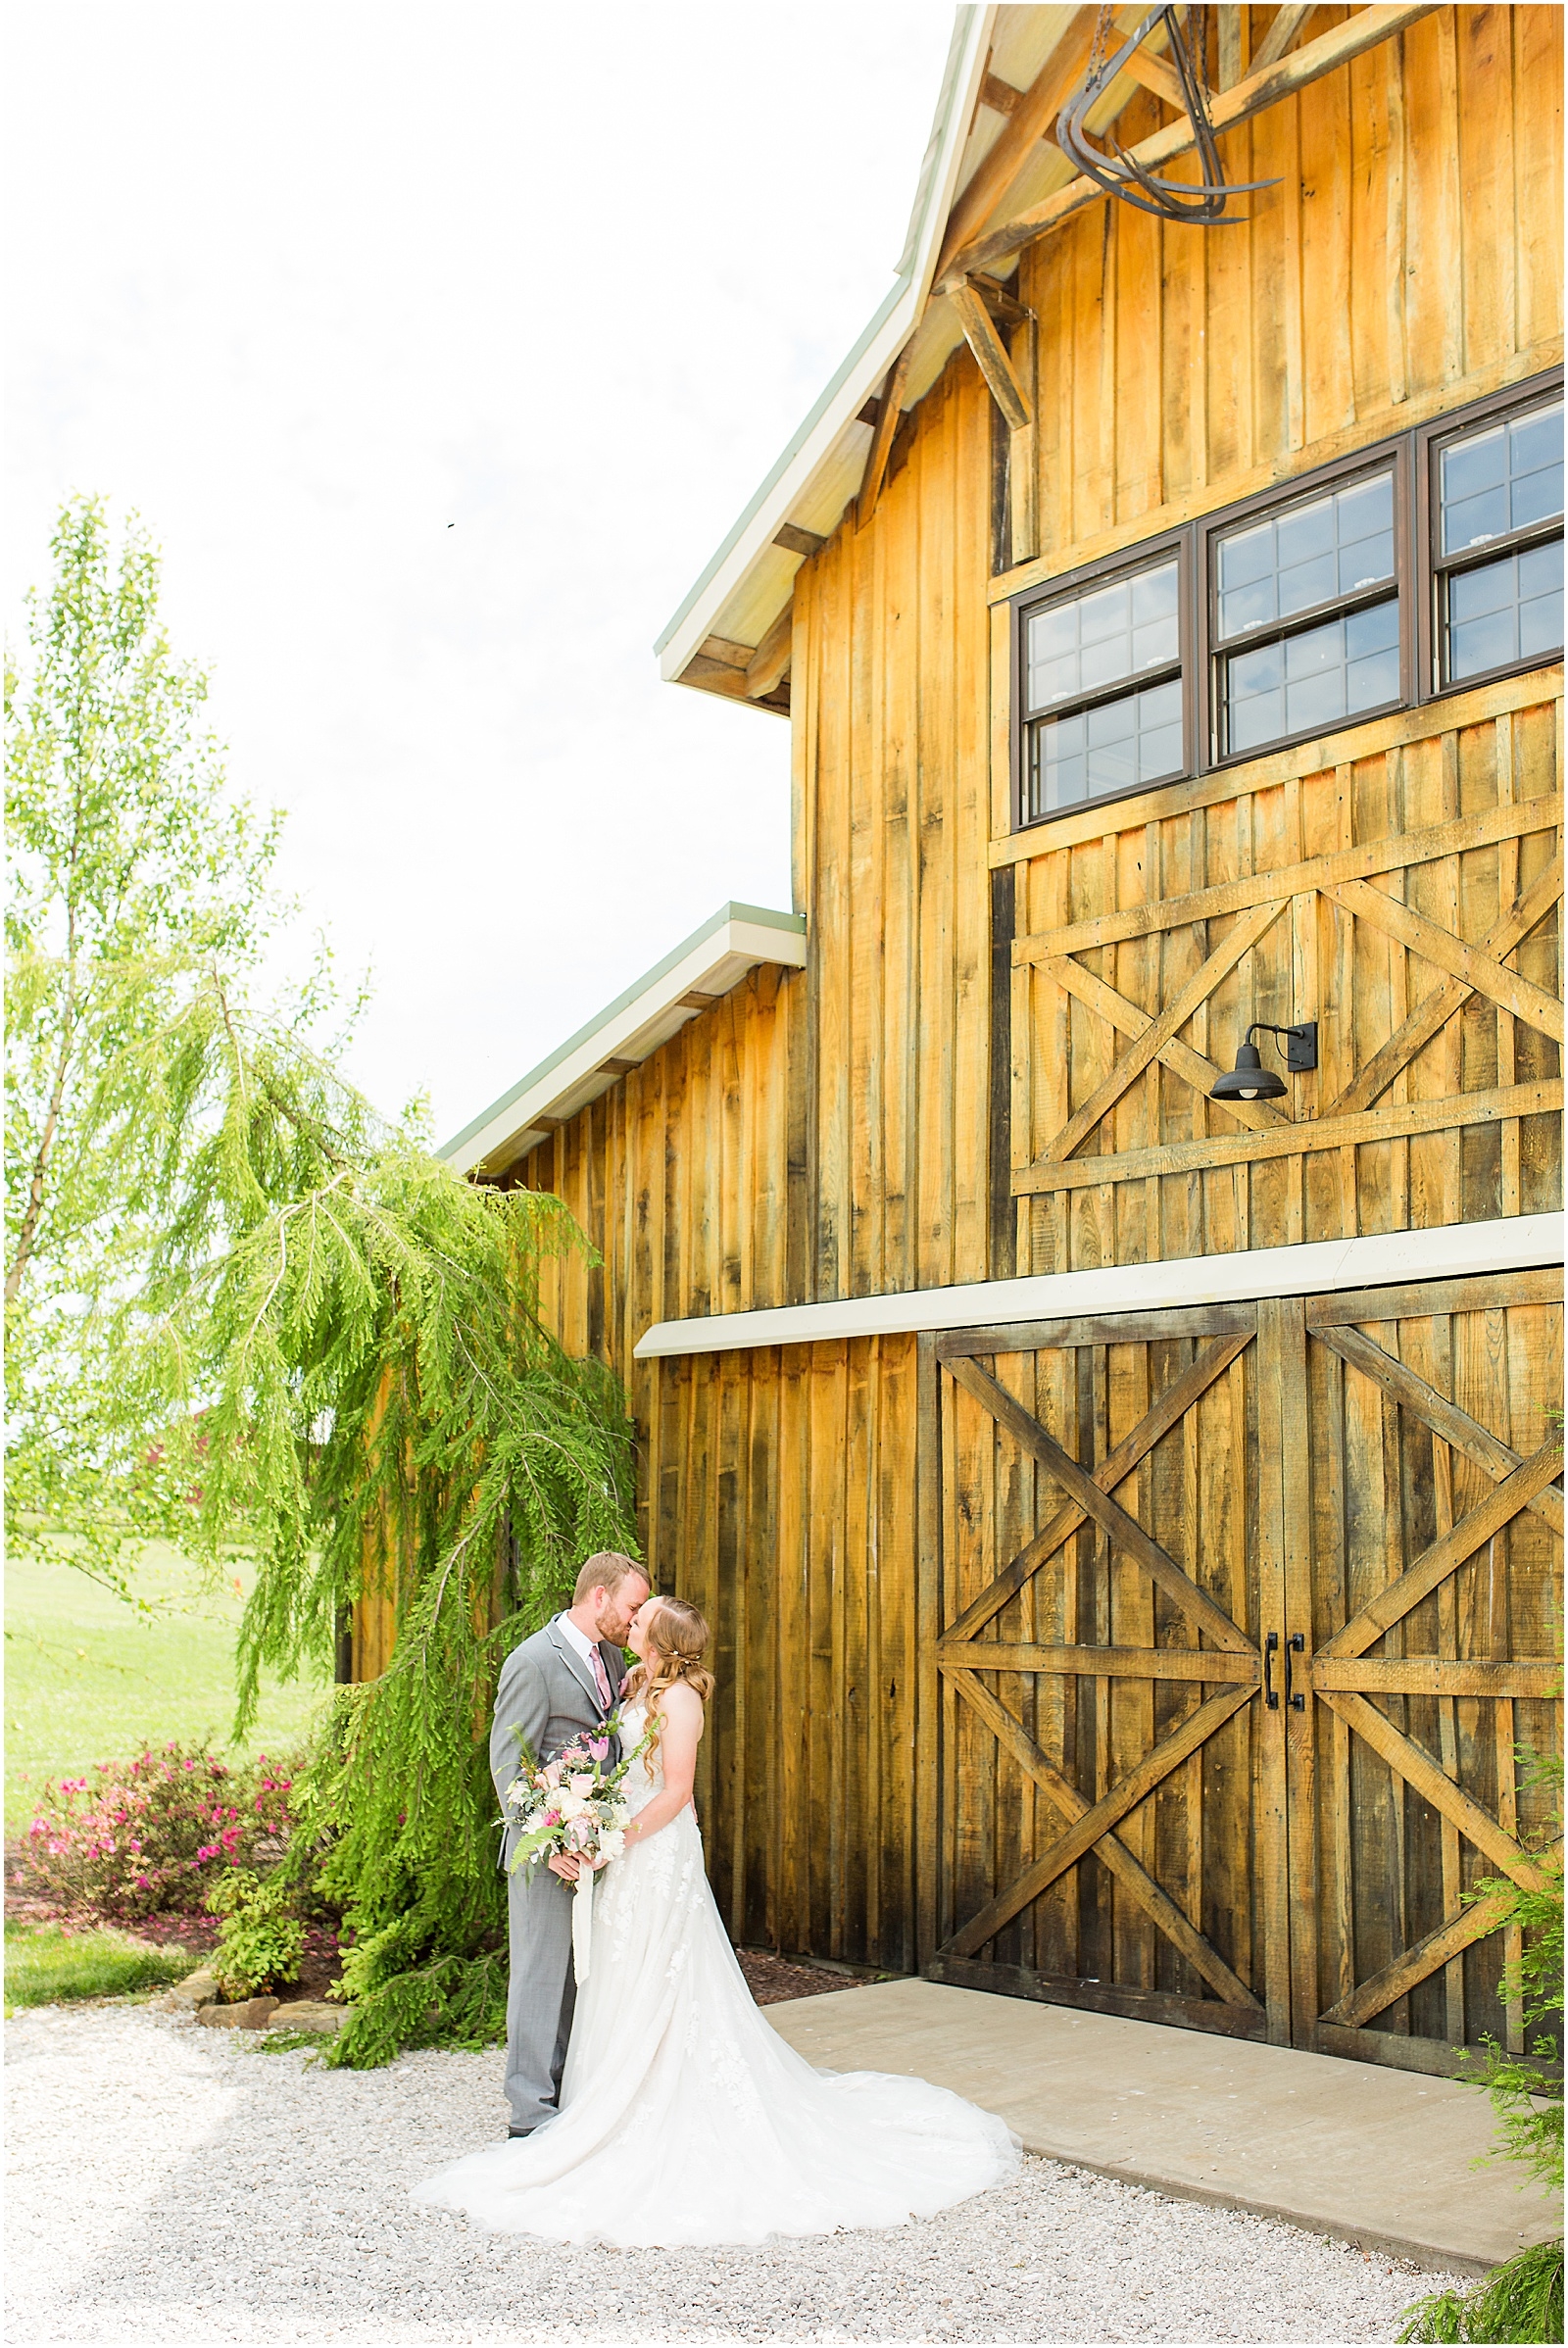 Sierra and Eddie | Wedding BlogBret and Brandie Blog | @bretandbrandie-0058.jpg